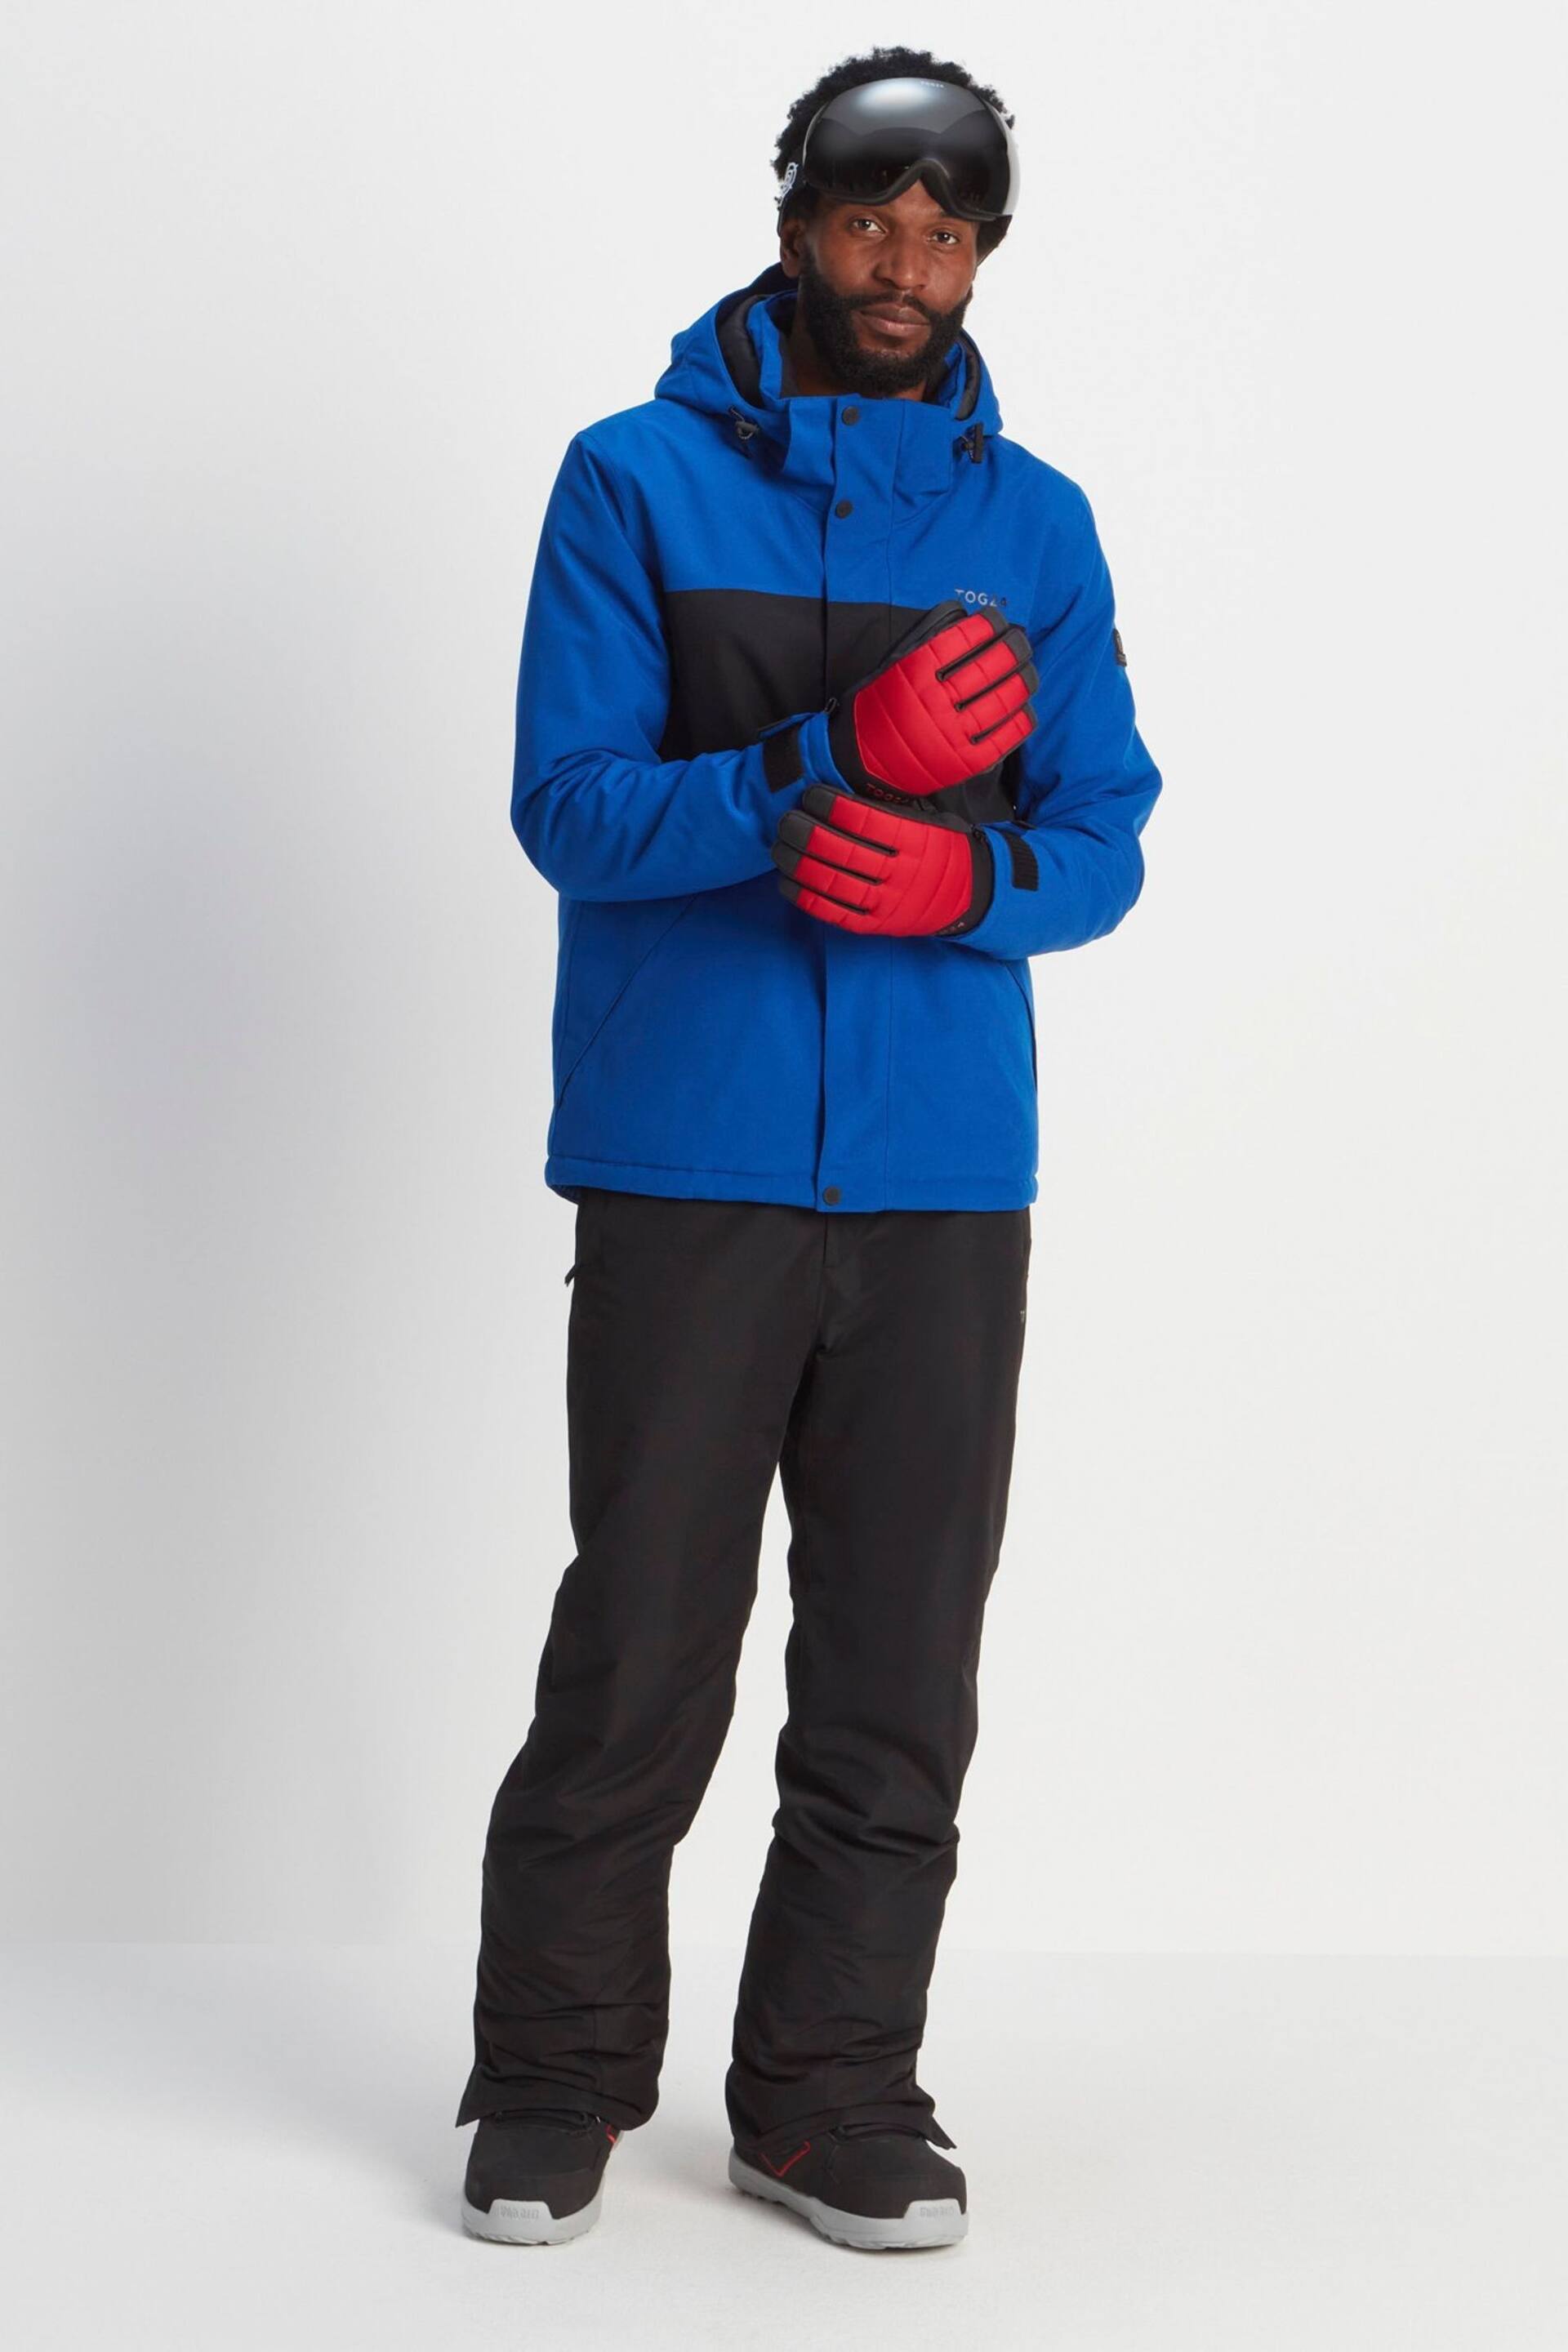 Tog 24 Red Adventure Ski Gloves - Image 2 of 3